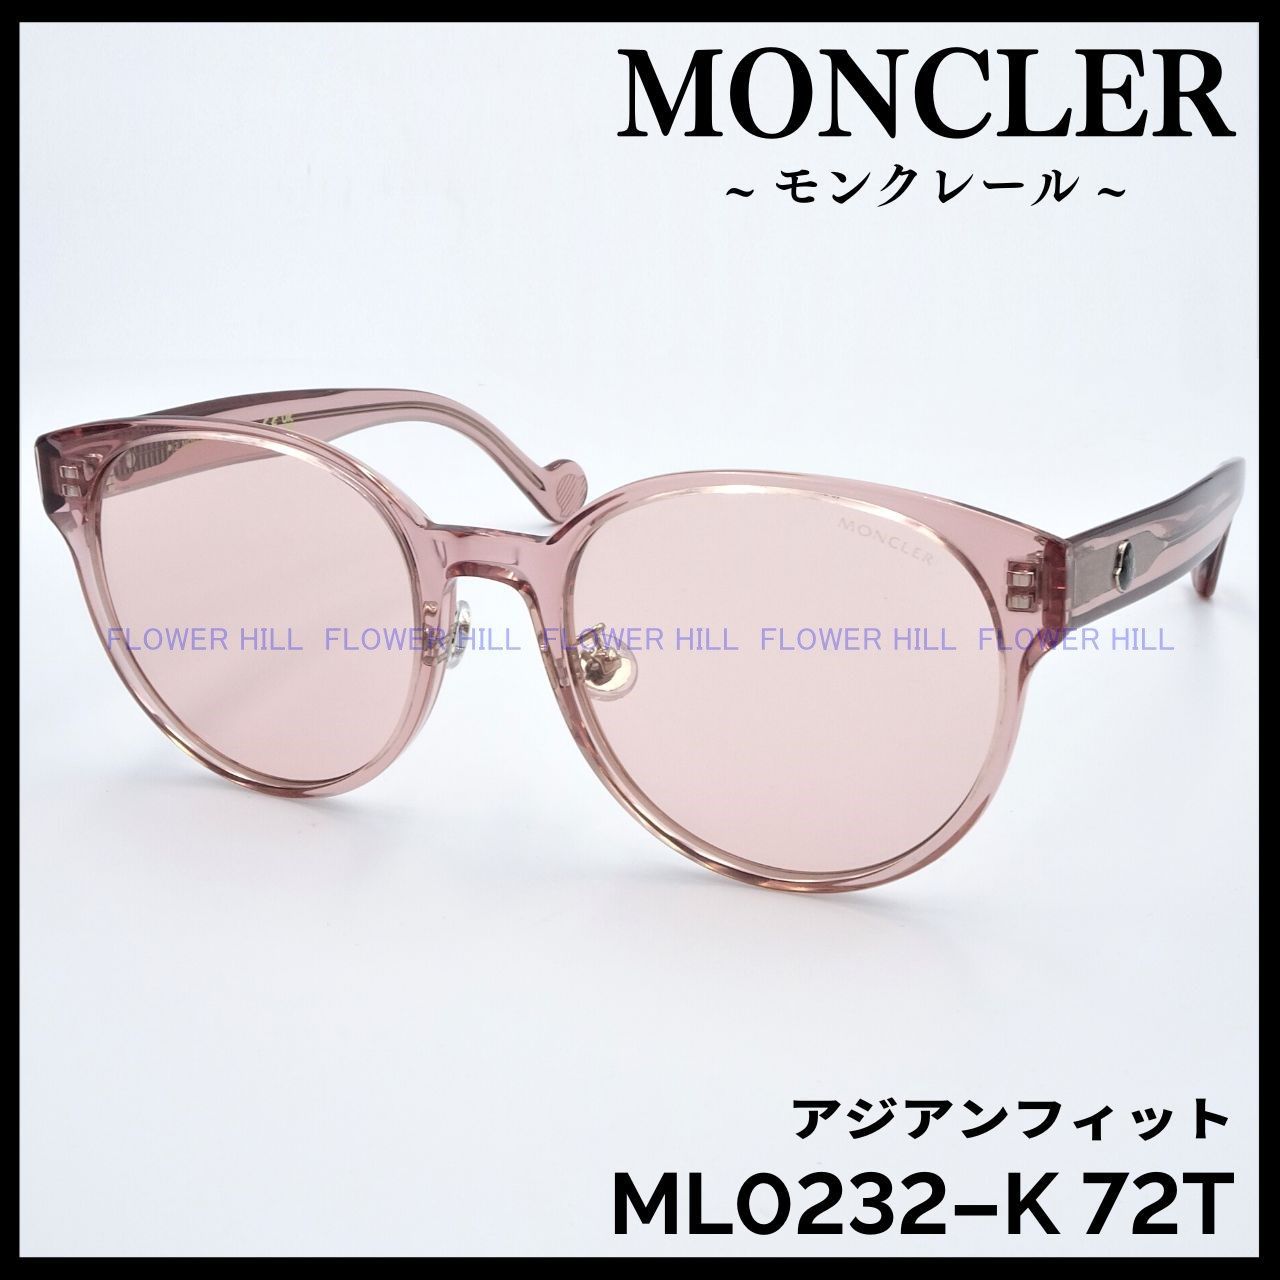 MONCLER モンクレール ML0232-K 72T サングラス クリアー アジアン 